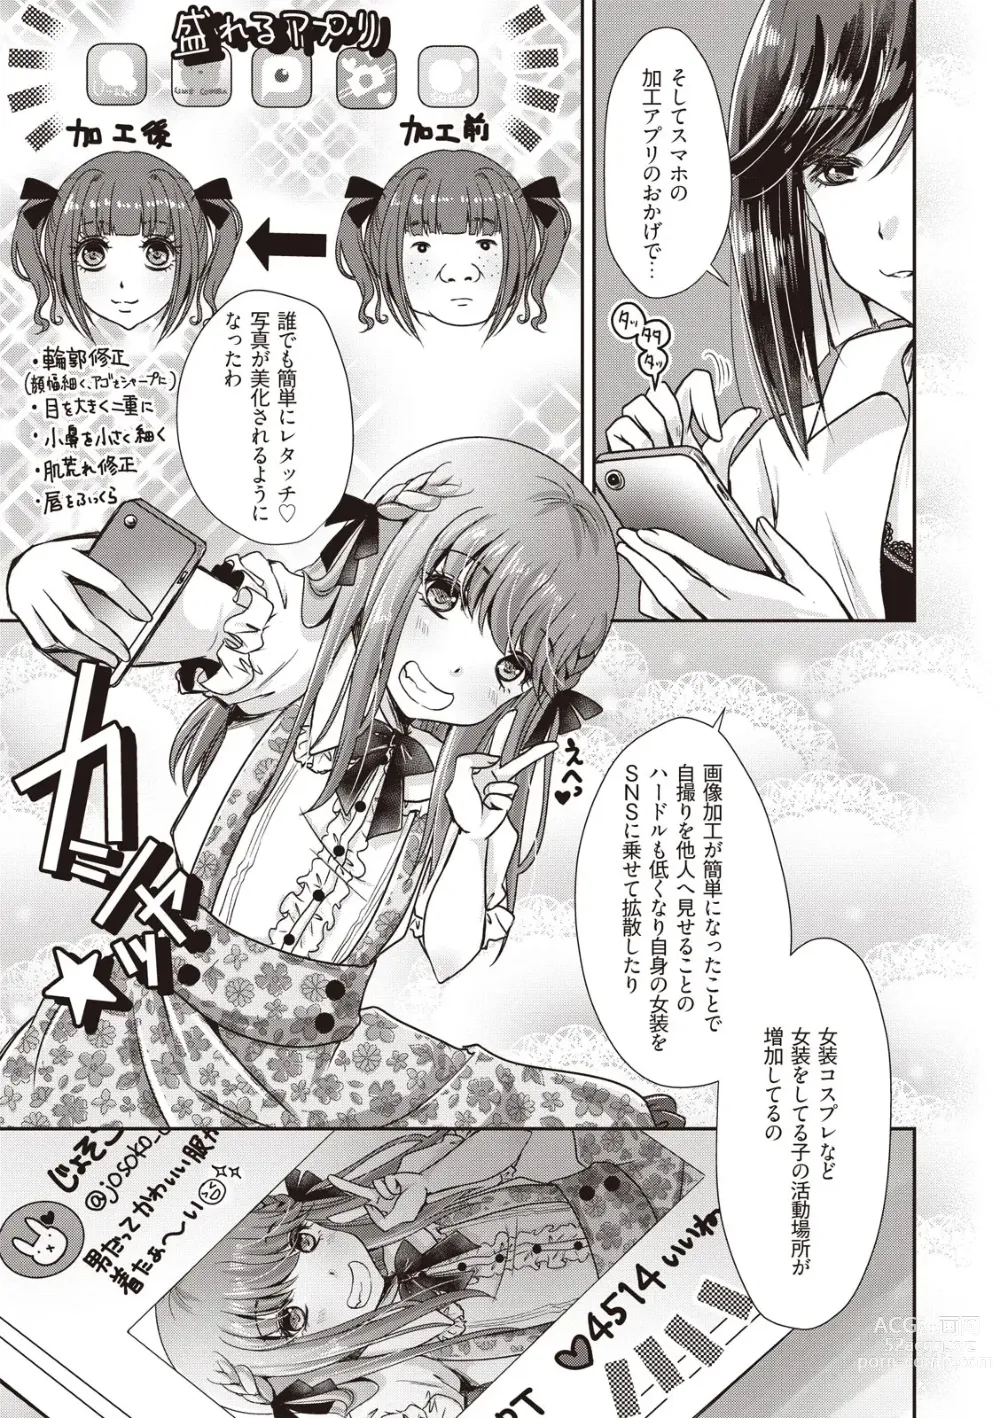 Page 9 of manga Manga de Furikaeru Otokonoko 10-nenshi